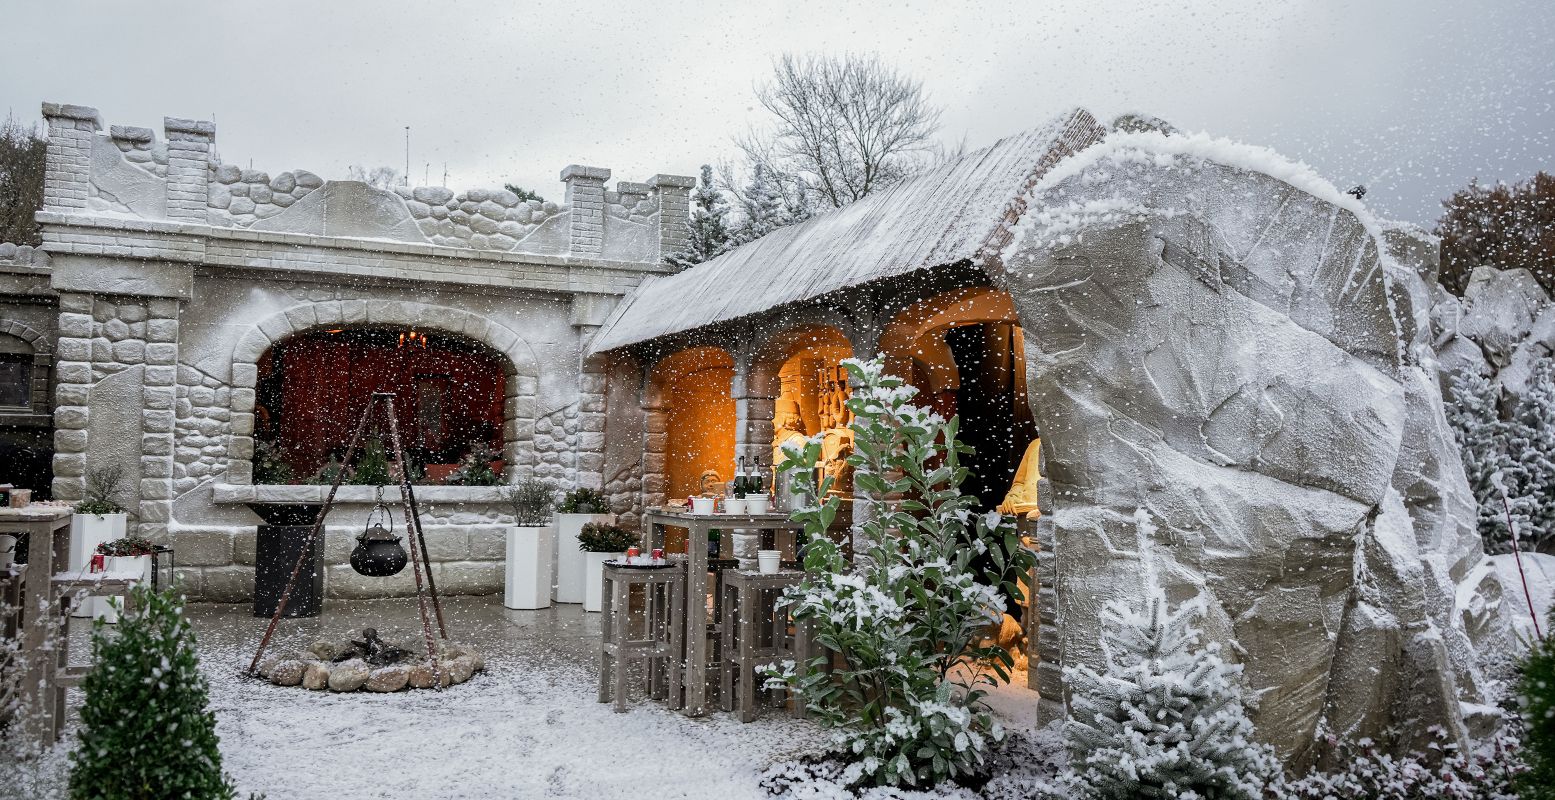 Het winterse plein in de wintertuin, sprookjesachtig mooi. Foto: 't Veluws Zandsculpturenfestijn